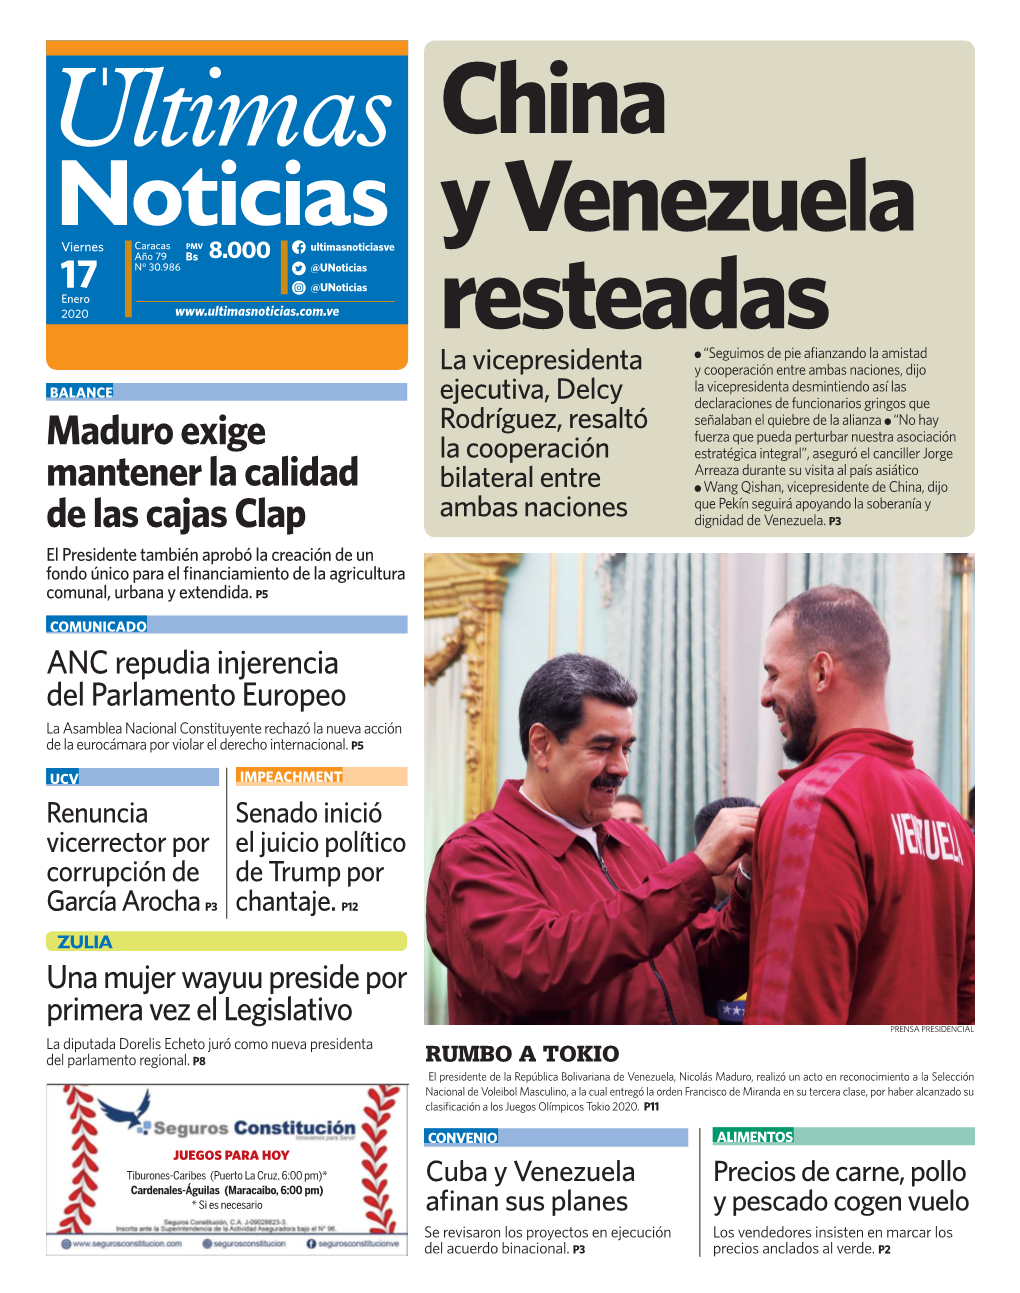 Maduro Exige Mantener La Calidad De Las Cajas Clap